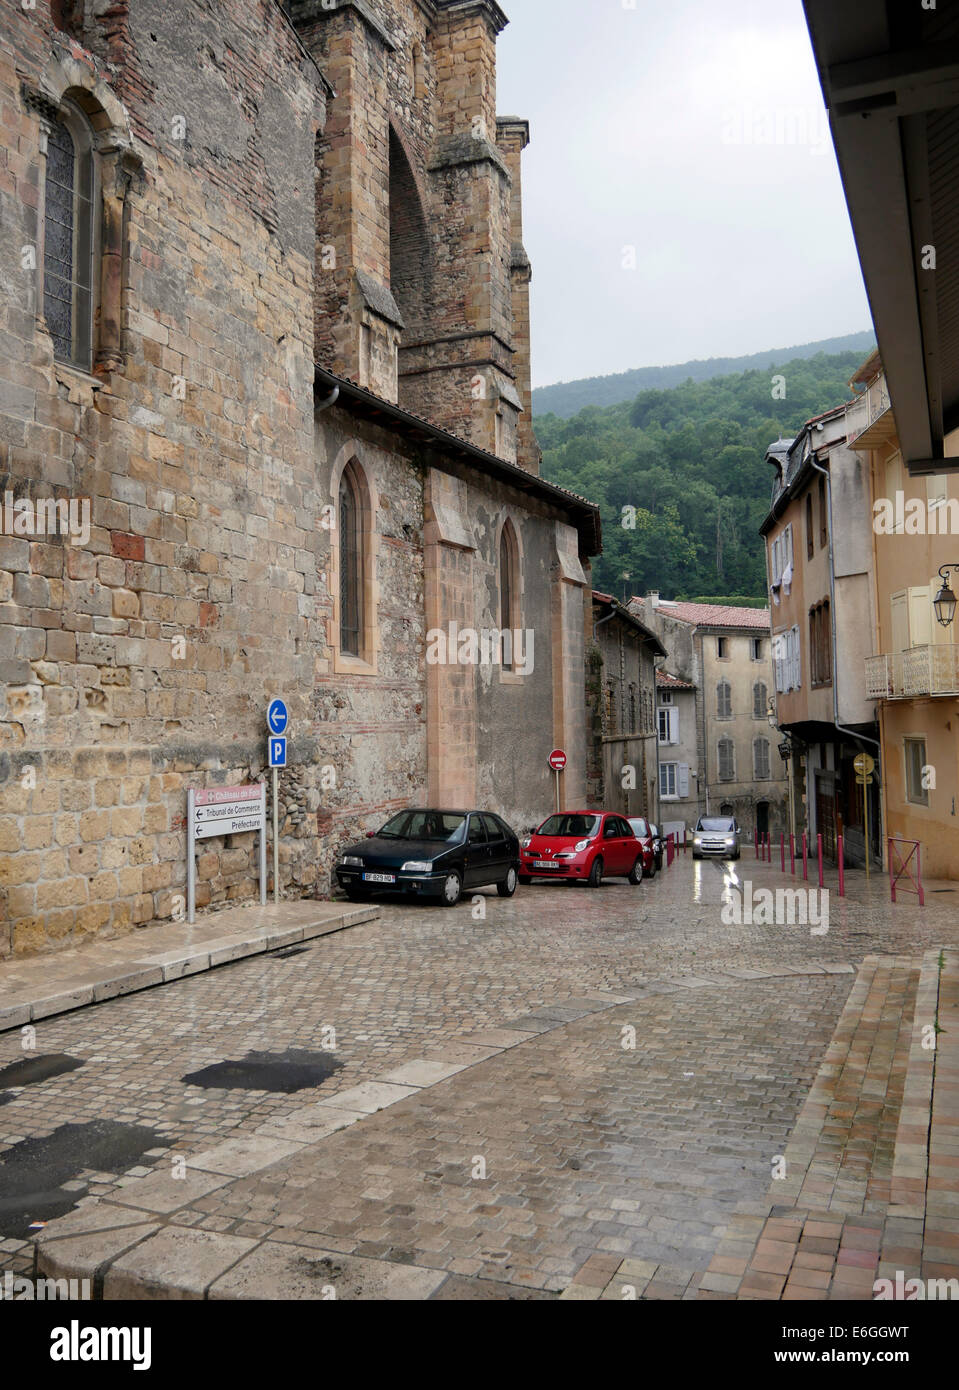 Murs du château, le centre-ville de Foix, Ariège, France Banque D'Images